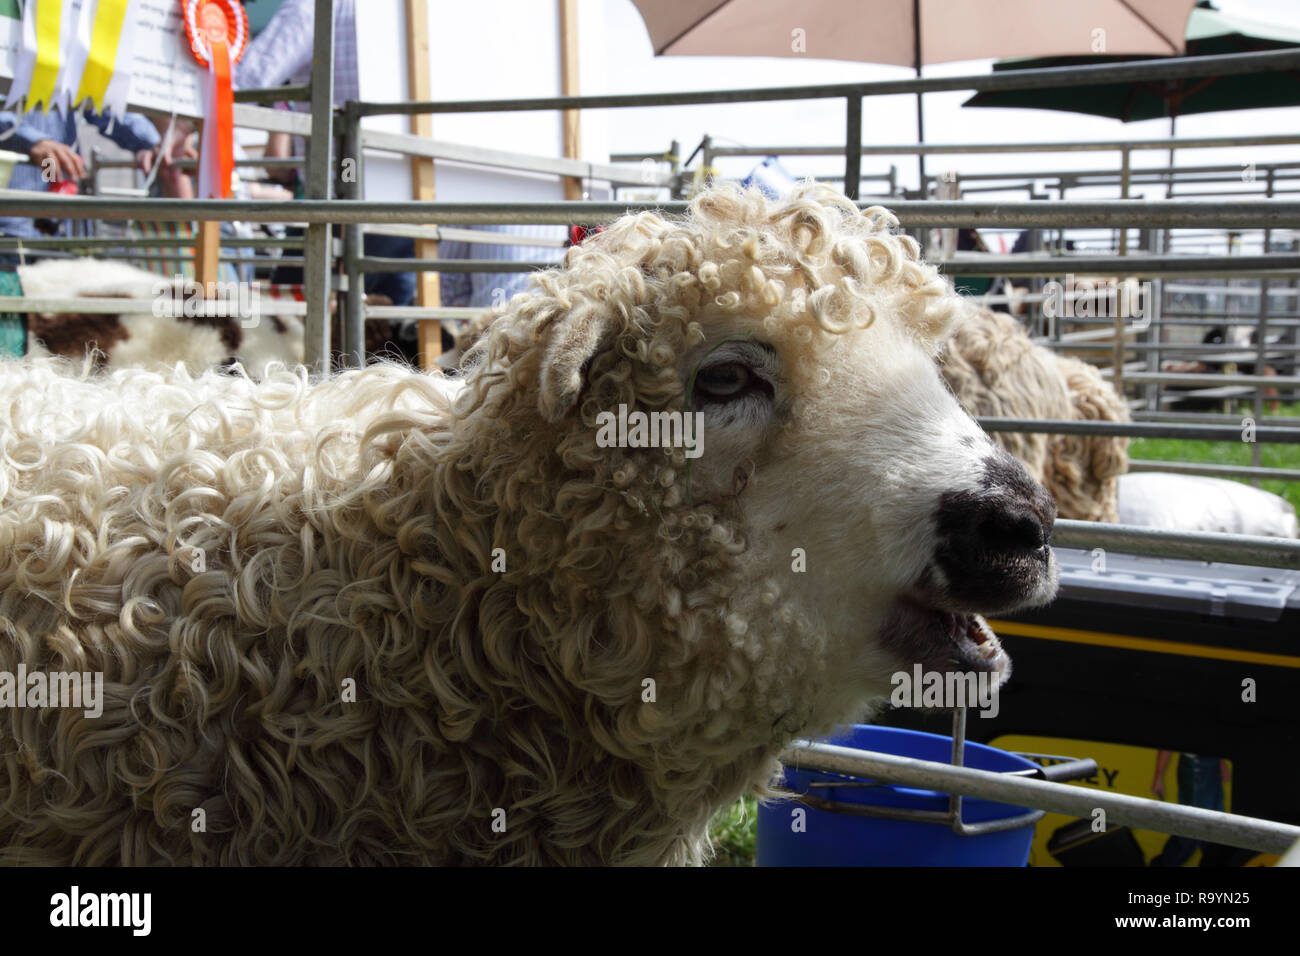 Longwool sheep in pen Stock Photo